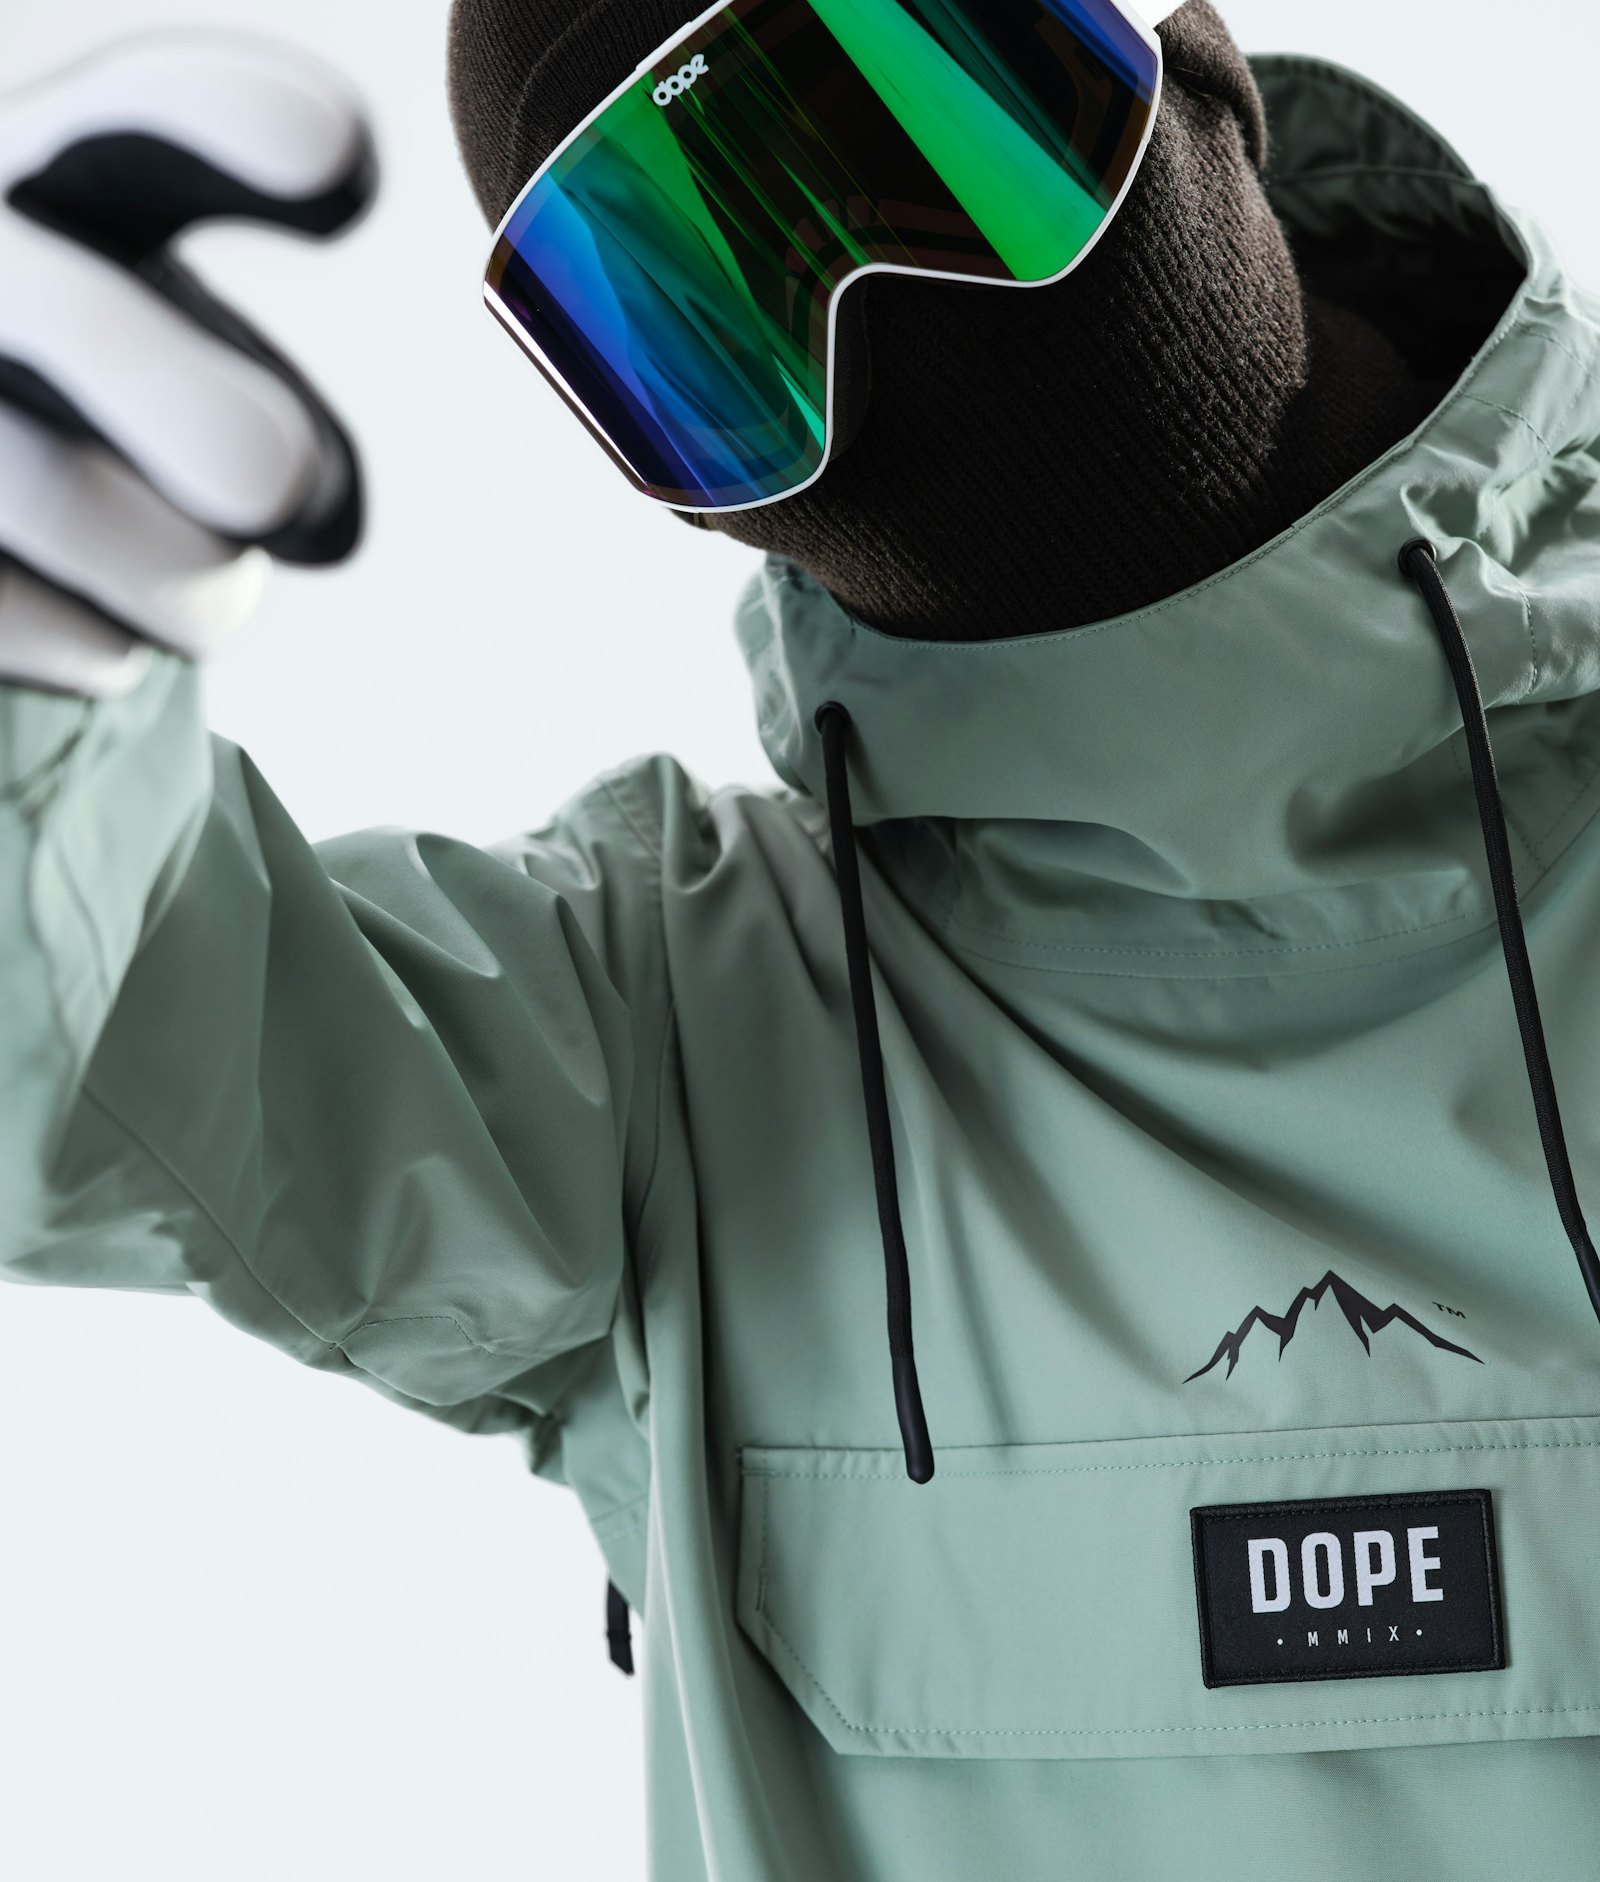 Blizzard 2020 Snowboard Jacket Men Faded Green